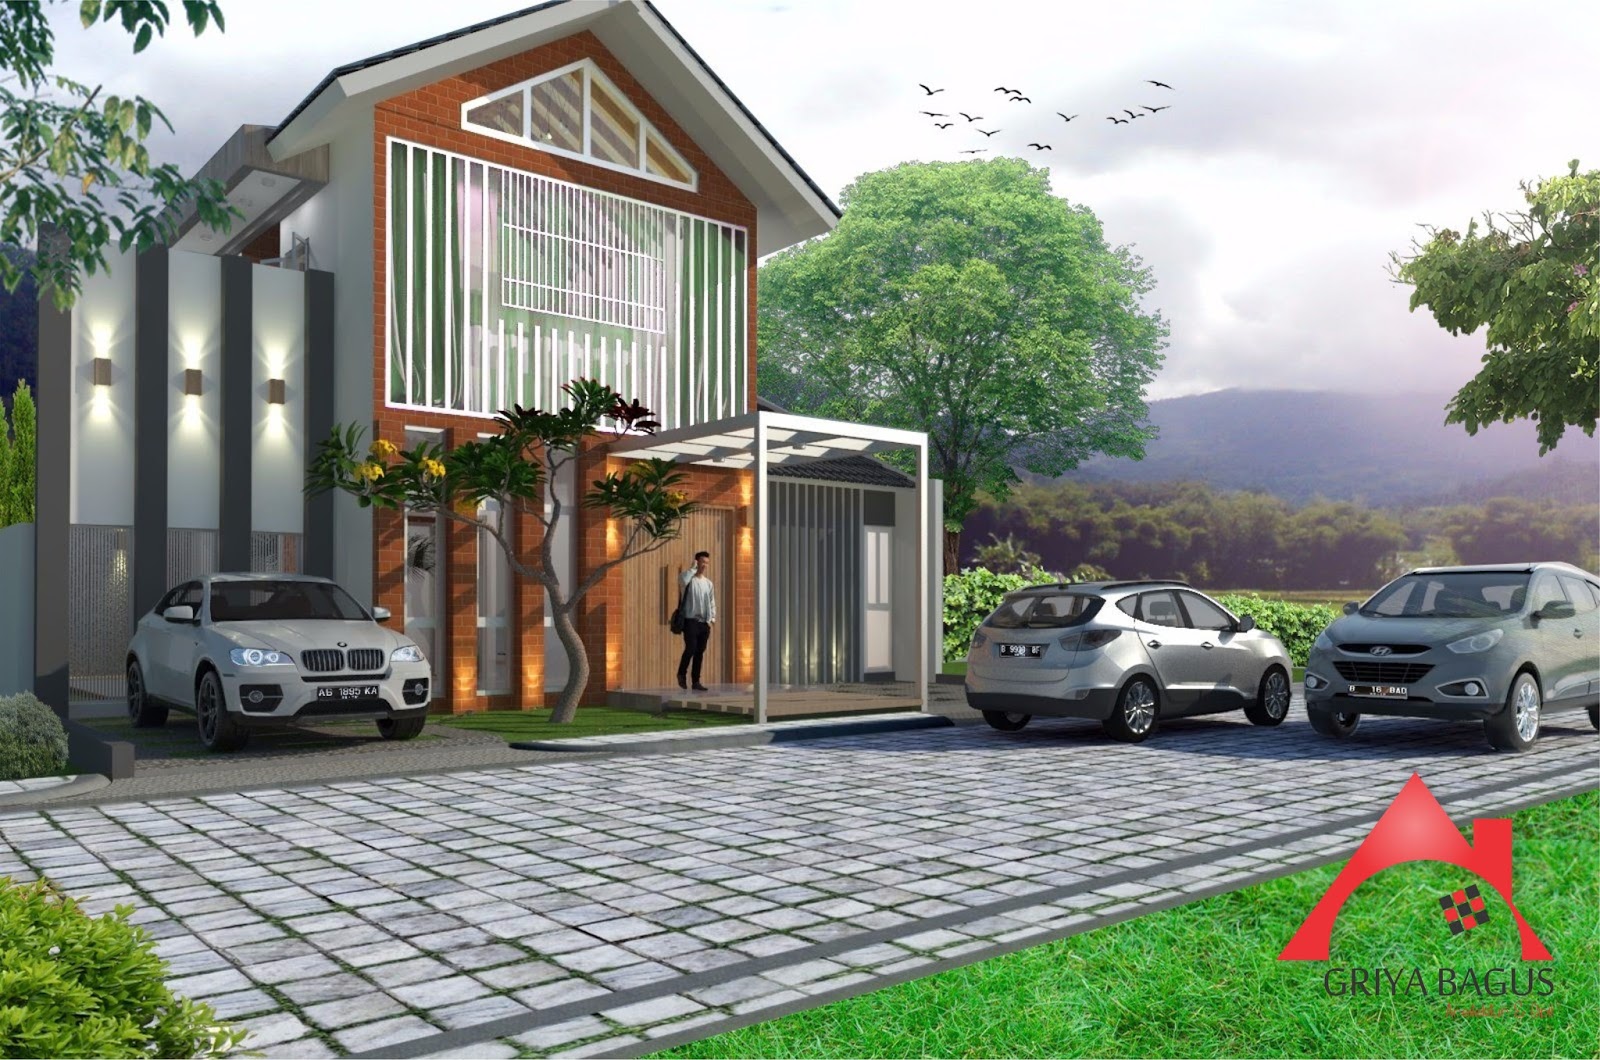 Desain Eksterior Rumah Tropis 2 Lantai Yogyakarta Griya Bagus